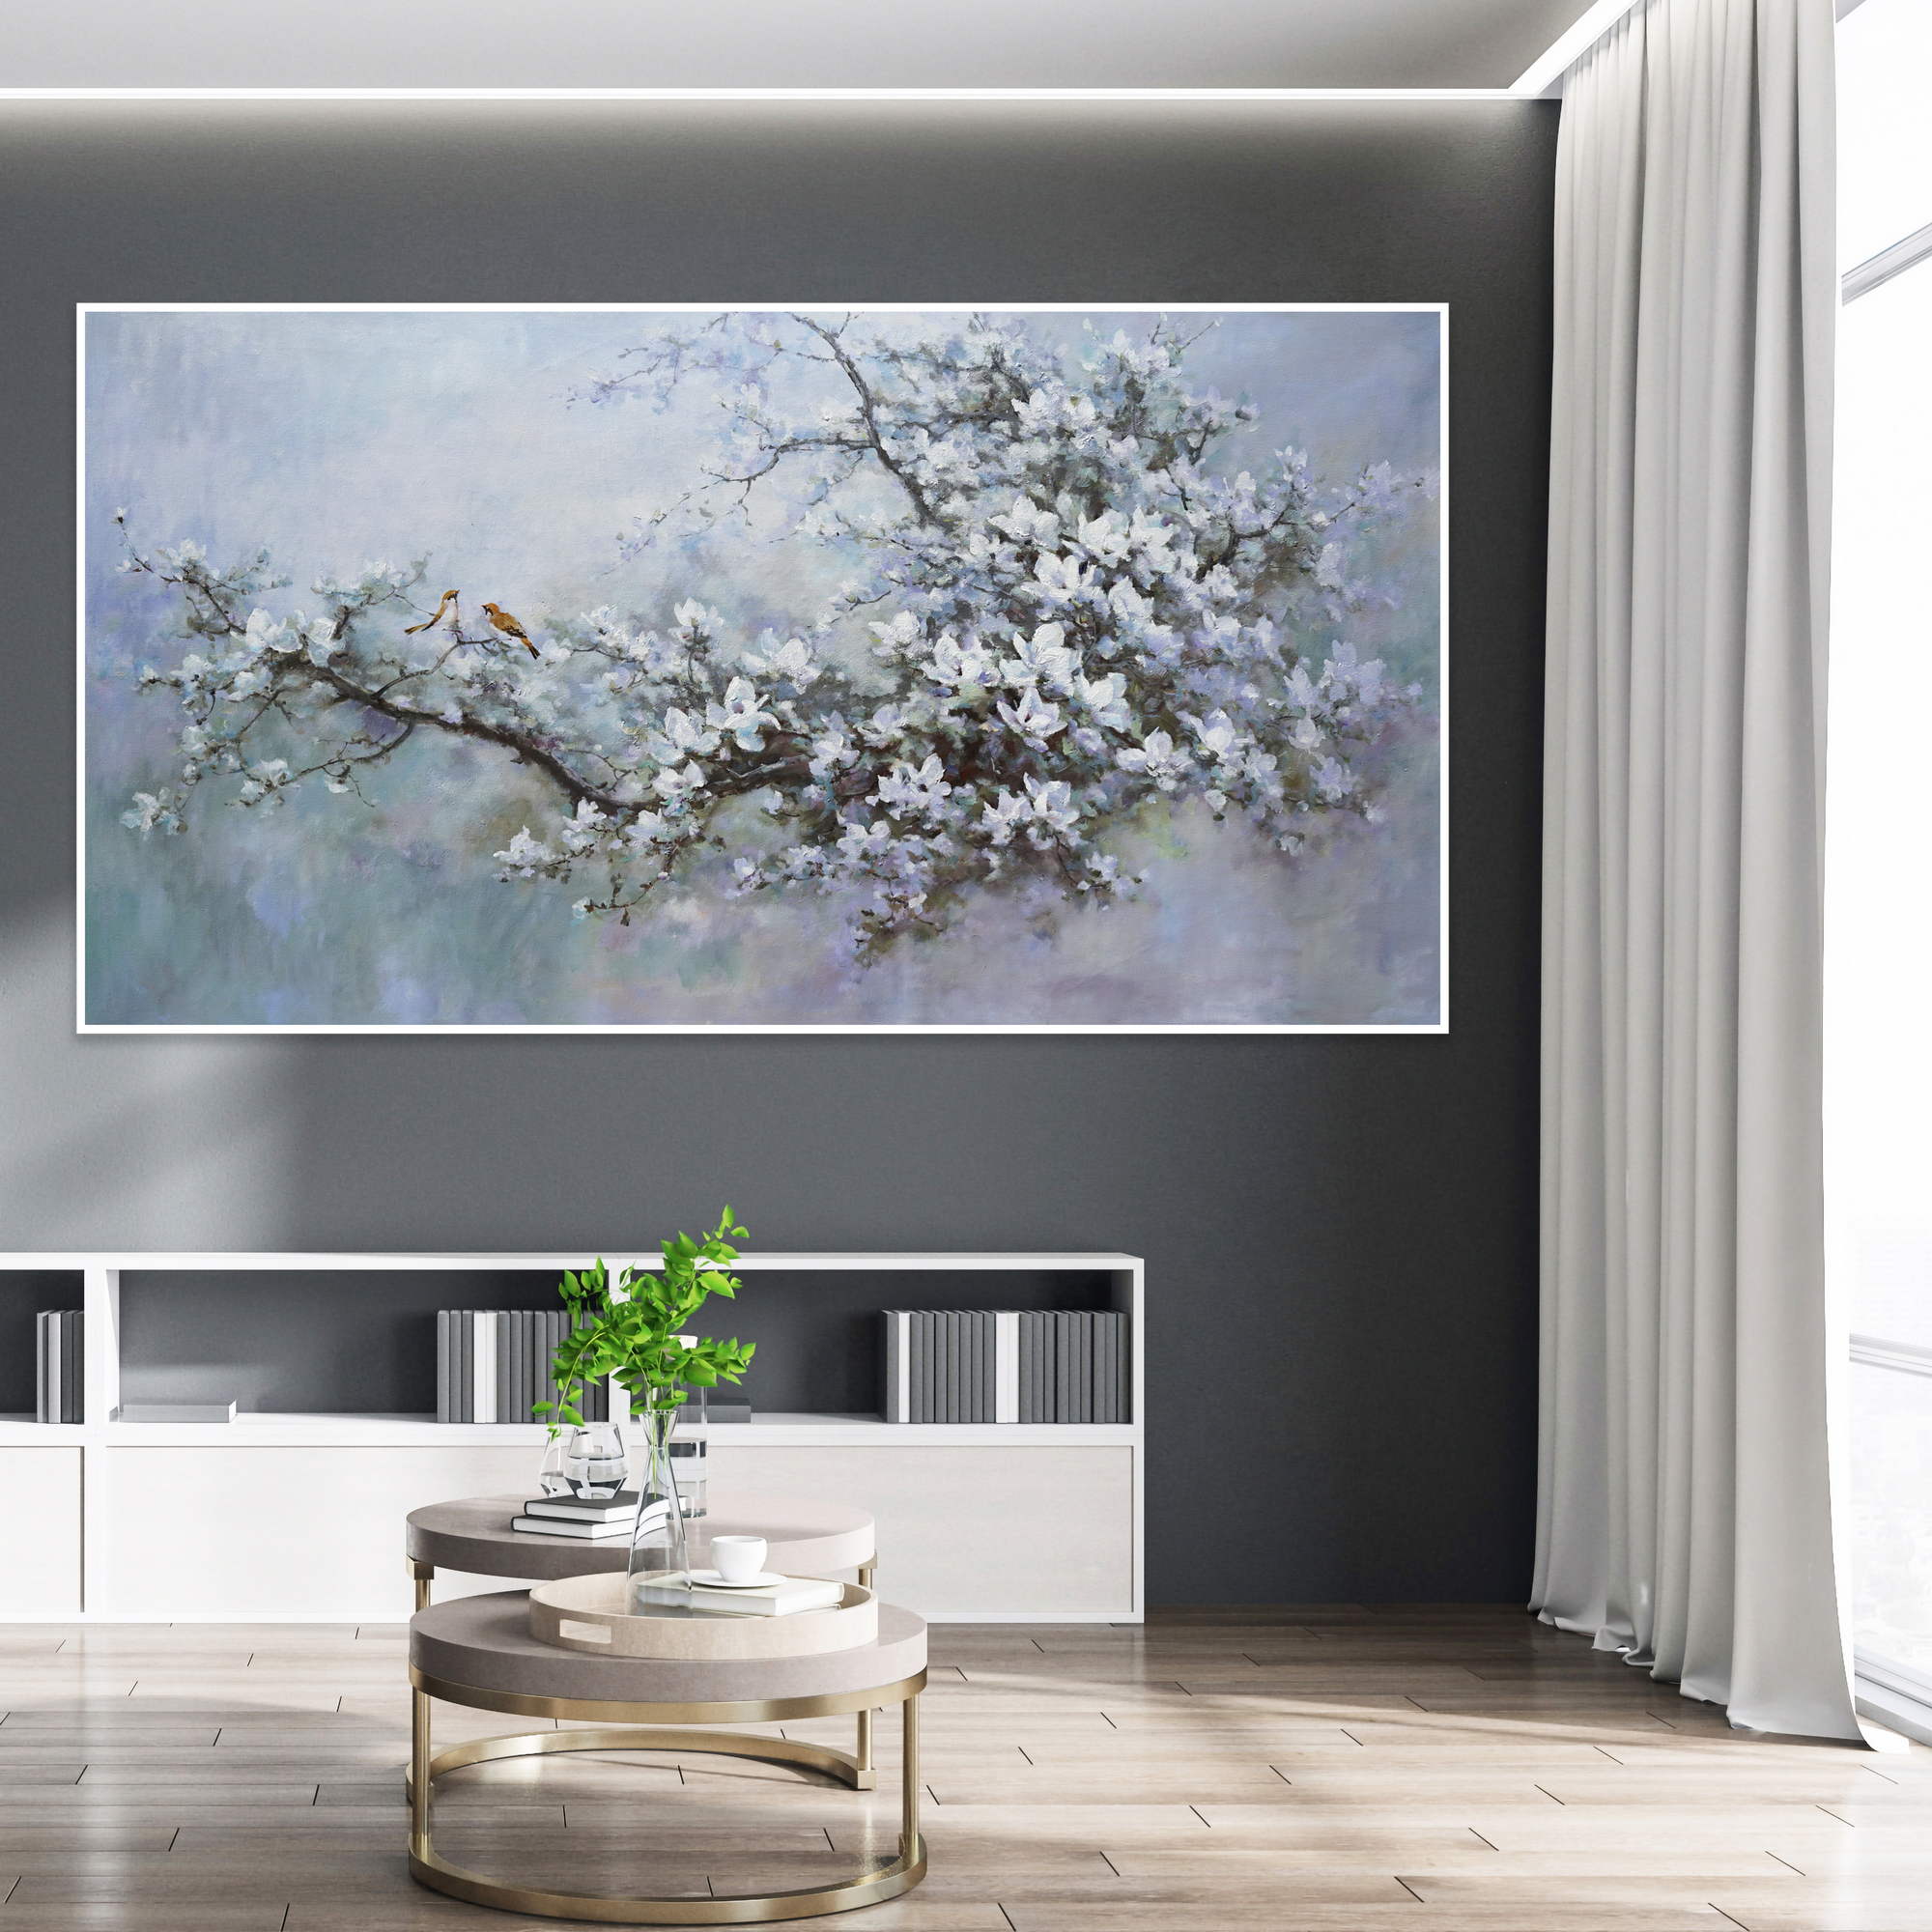 Dipinto di un ciliegio in fiore con fiori bianchi e uccelli